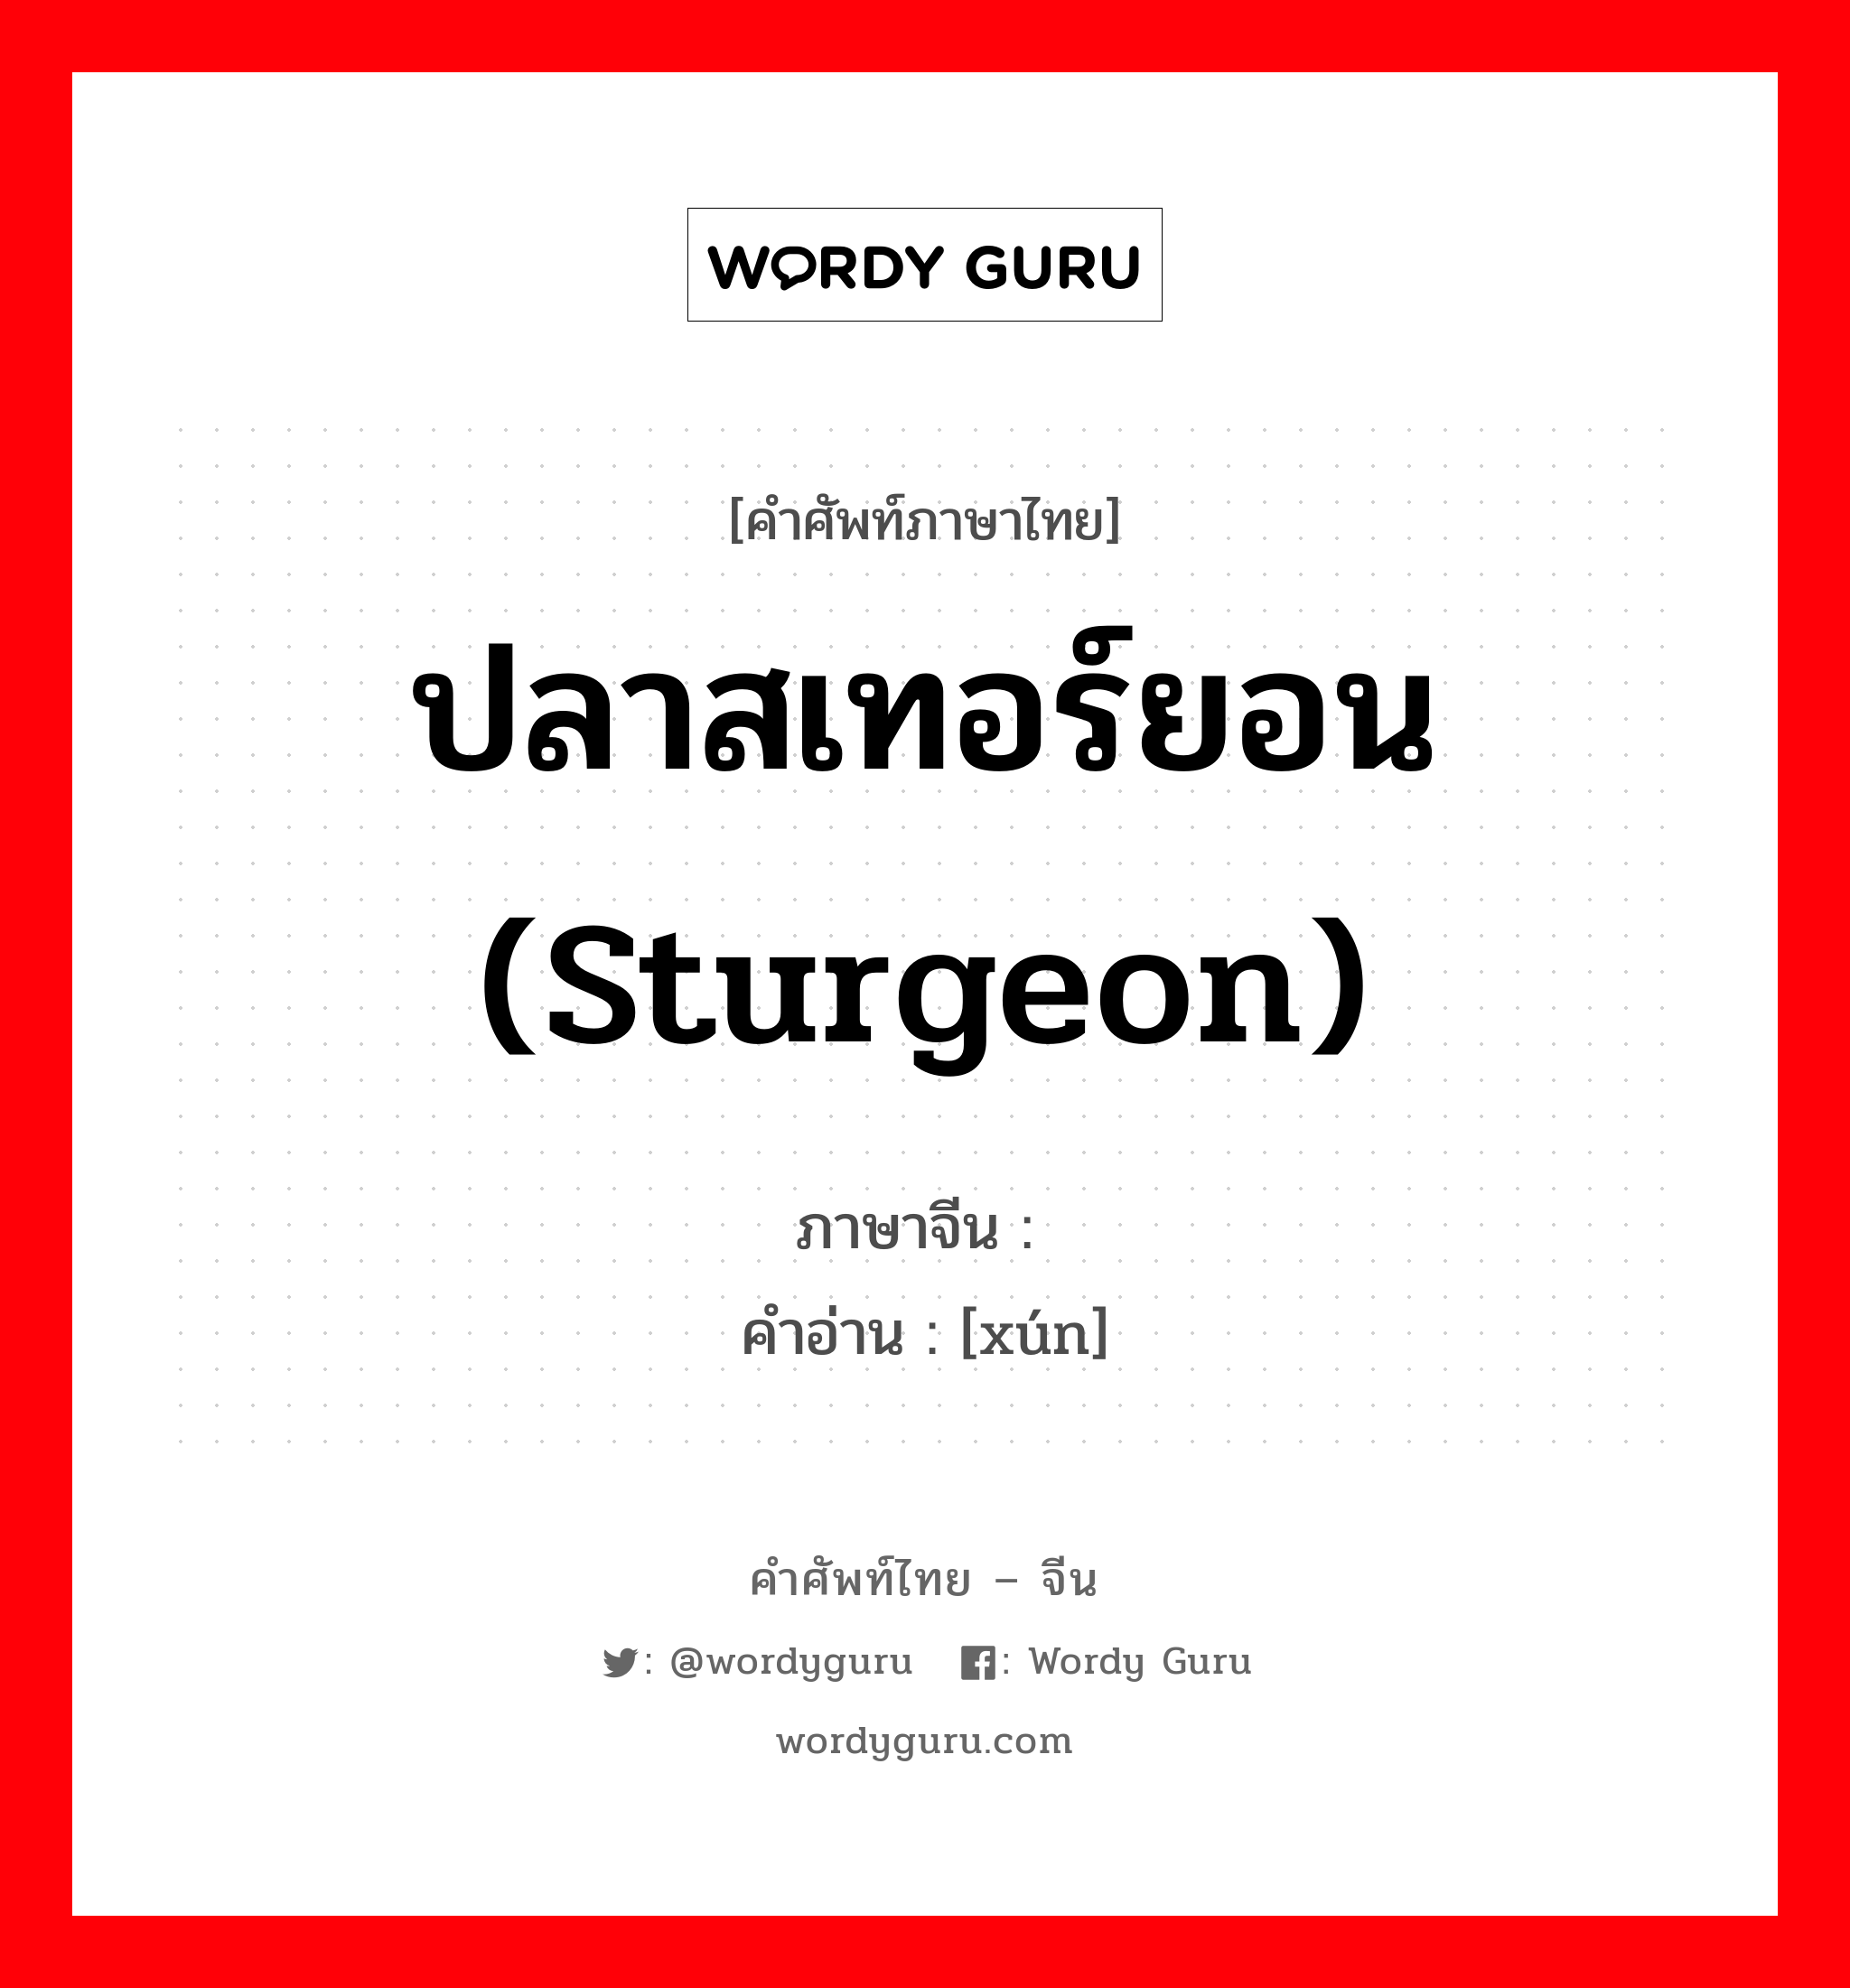 ปลาสเทอร์ยอน (sturgeon) ภาษาจีนคืออะไร, คำศัพท์ภาษาไทย - จีน ปลาสเทอร์ยอน (sturgeon) ภาษาจีน 鲟 คำอ่าน [xún]